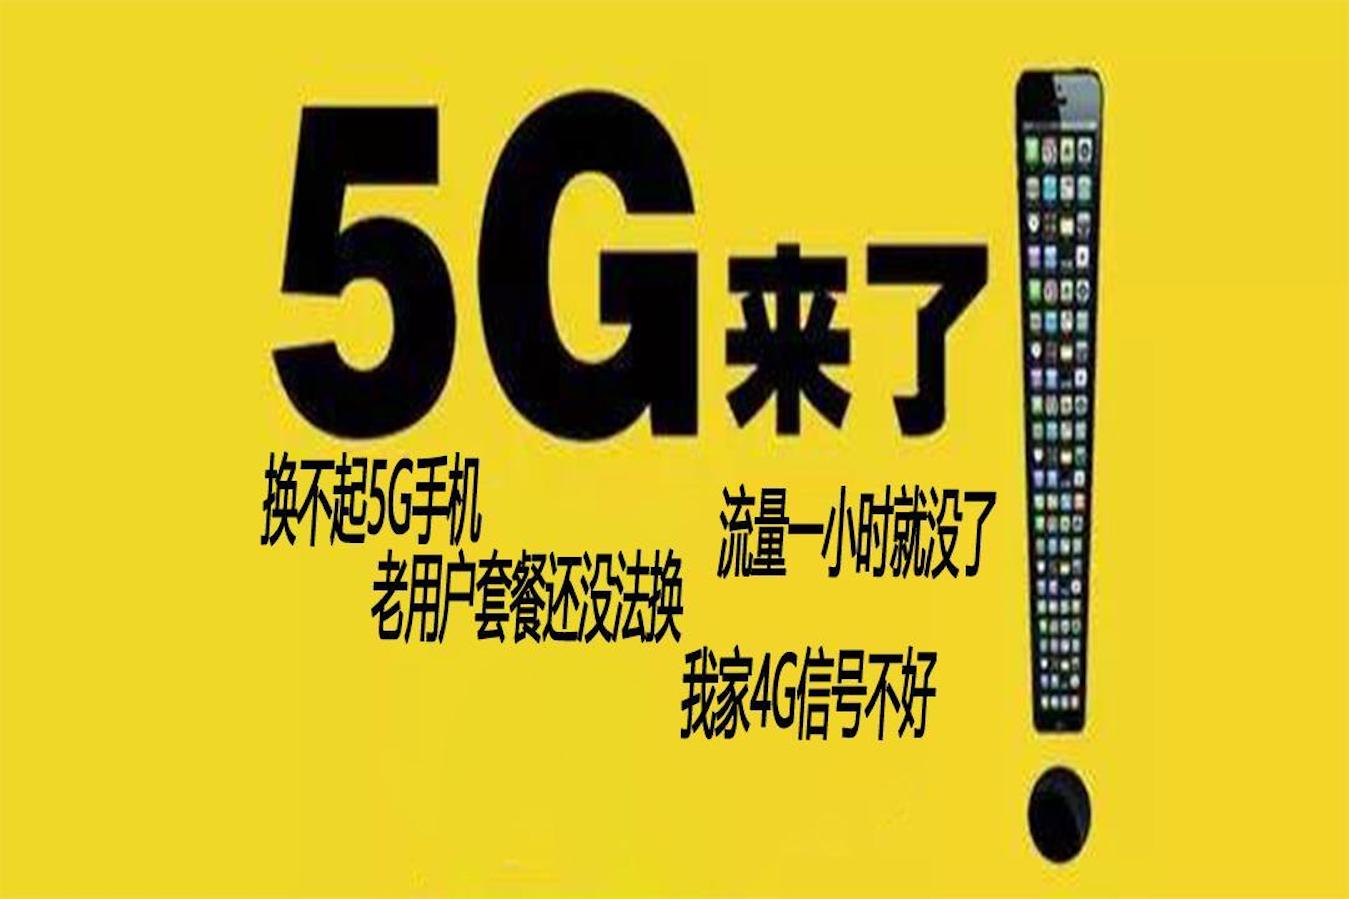 3G 手机无法接入 5G 网络，背后原因及事件引人深思  第6张